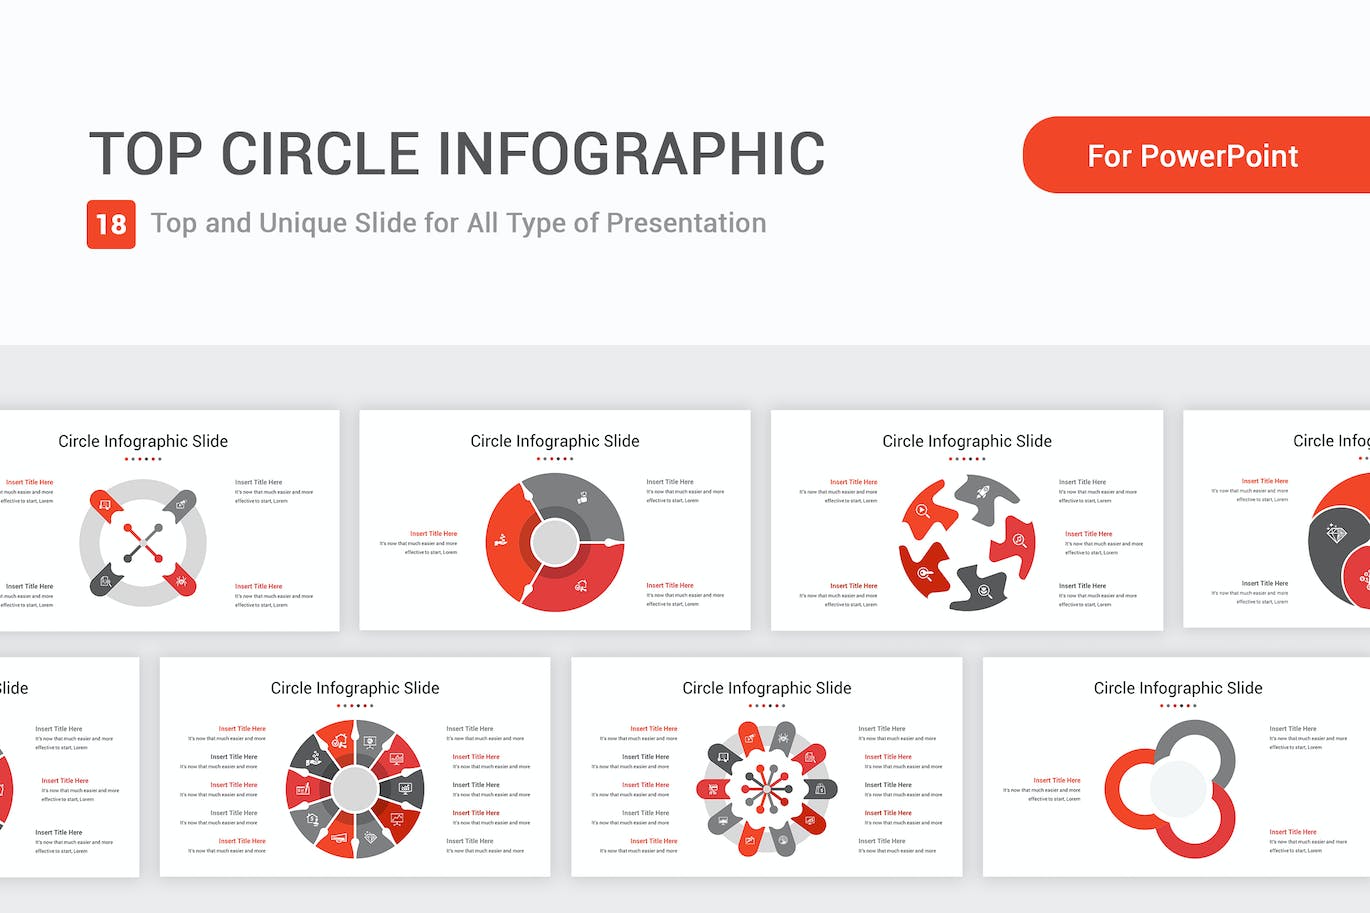 圆形数据图表PPT幻灯片模板 Top Circle Infographic PowerPoint Template 幻灯图表 第1张